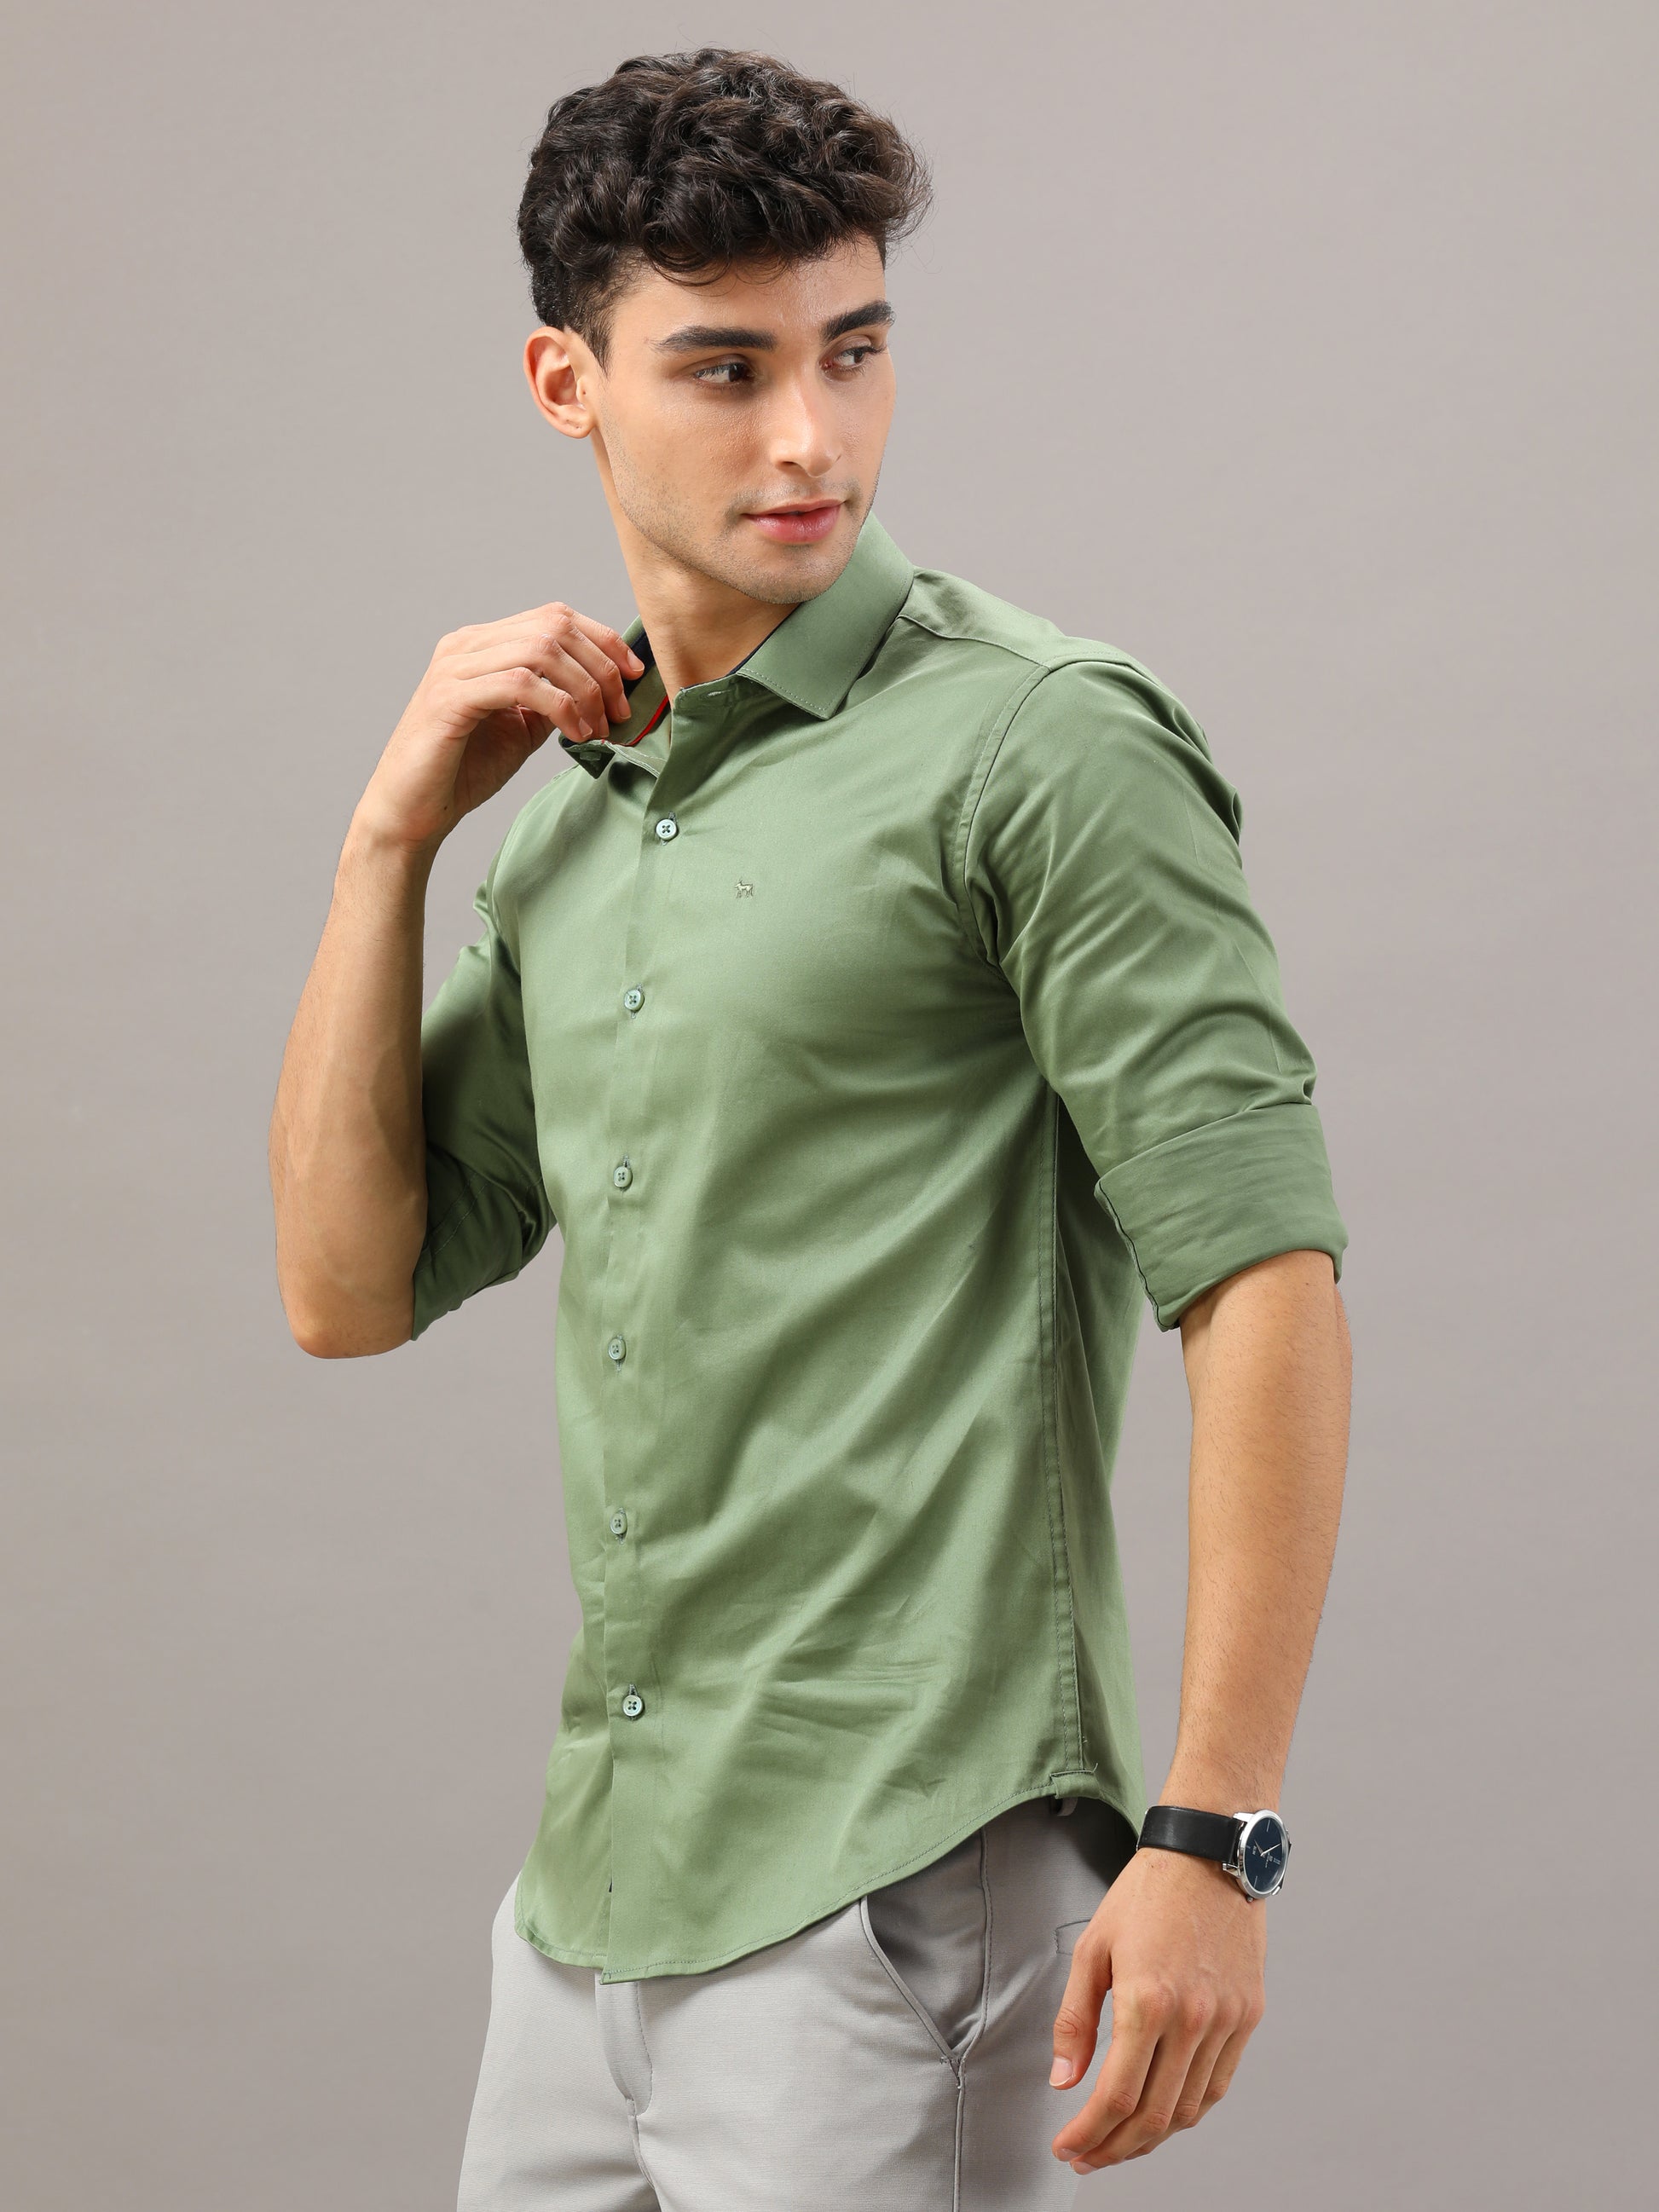 Plain Green shirt full sleeve